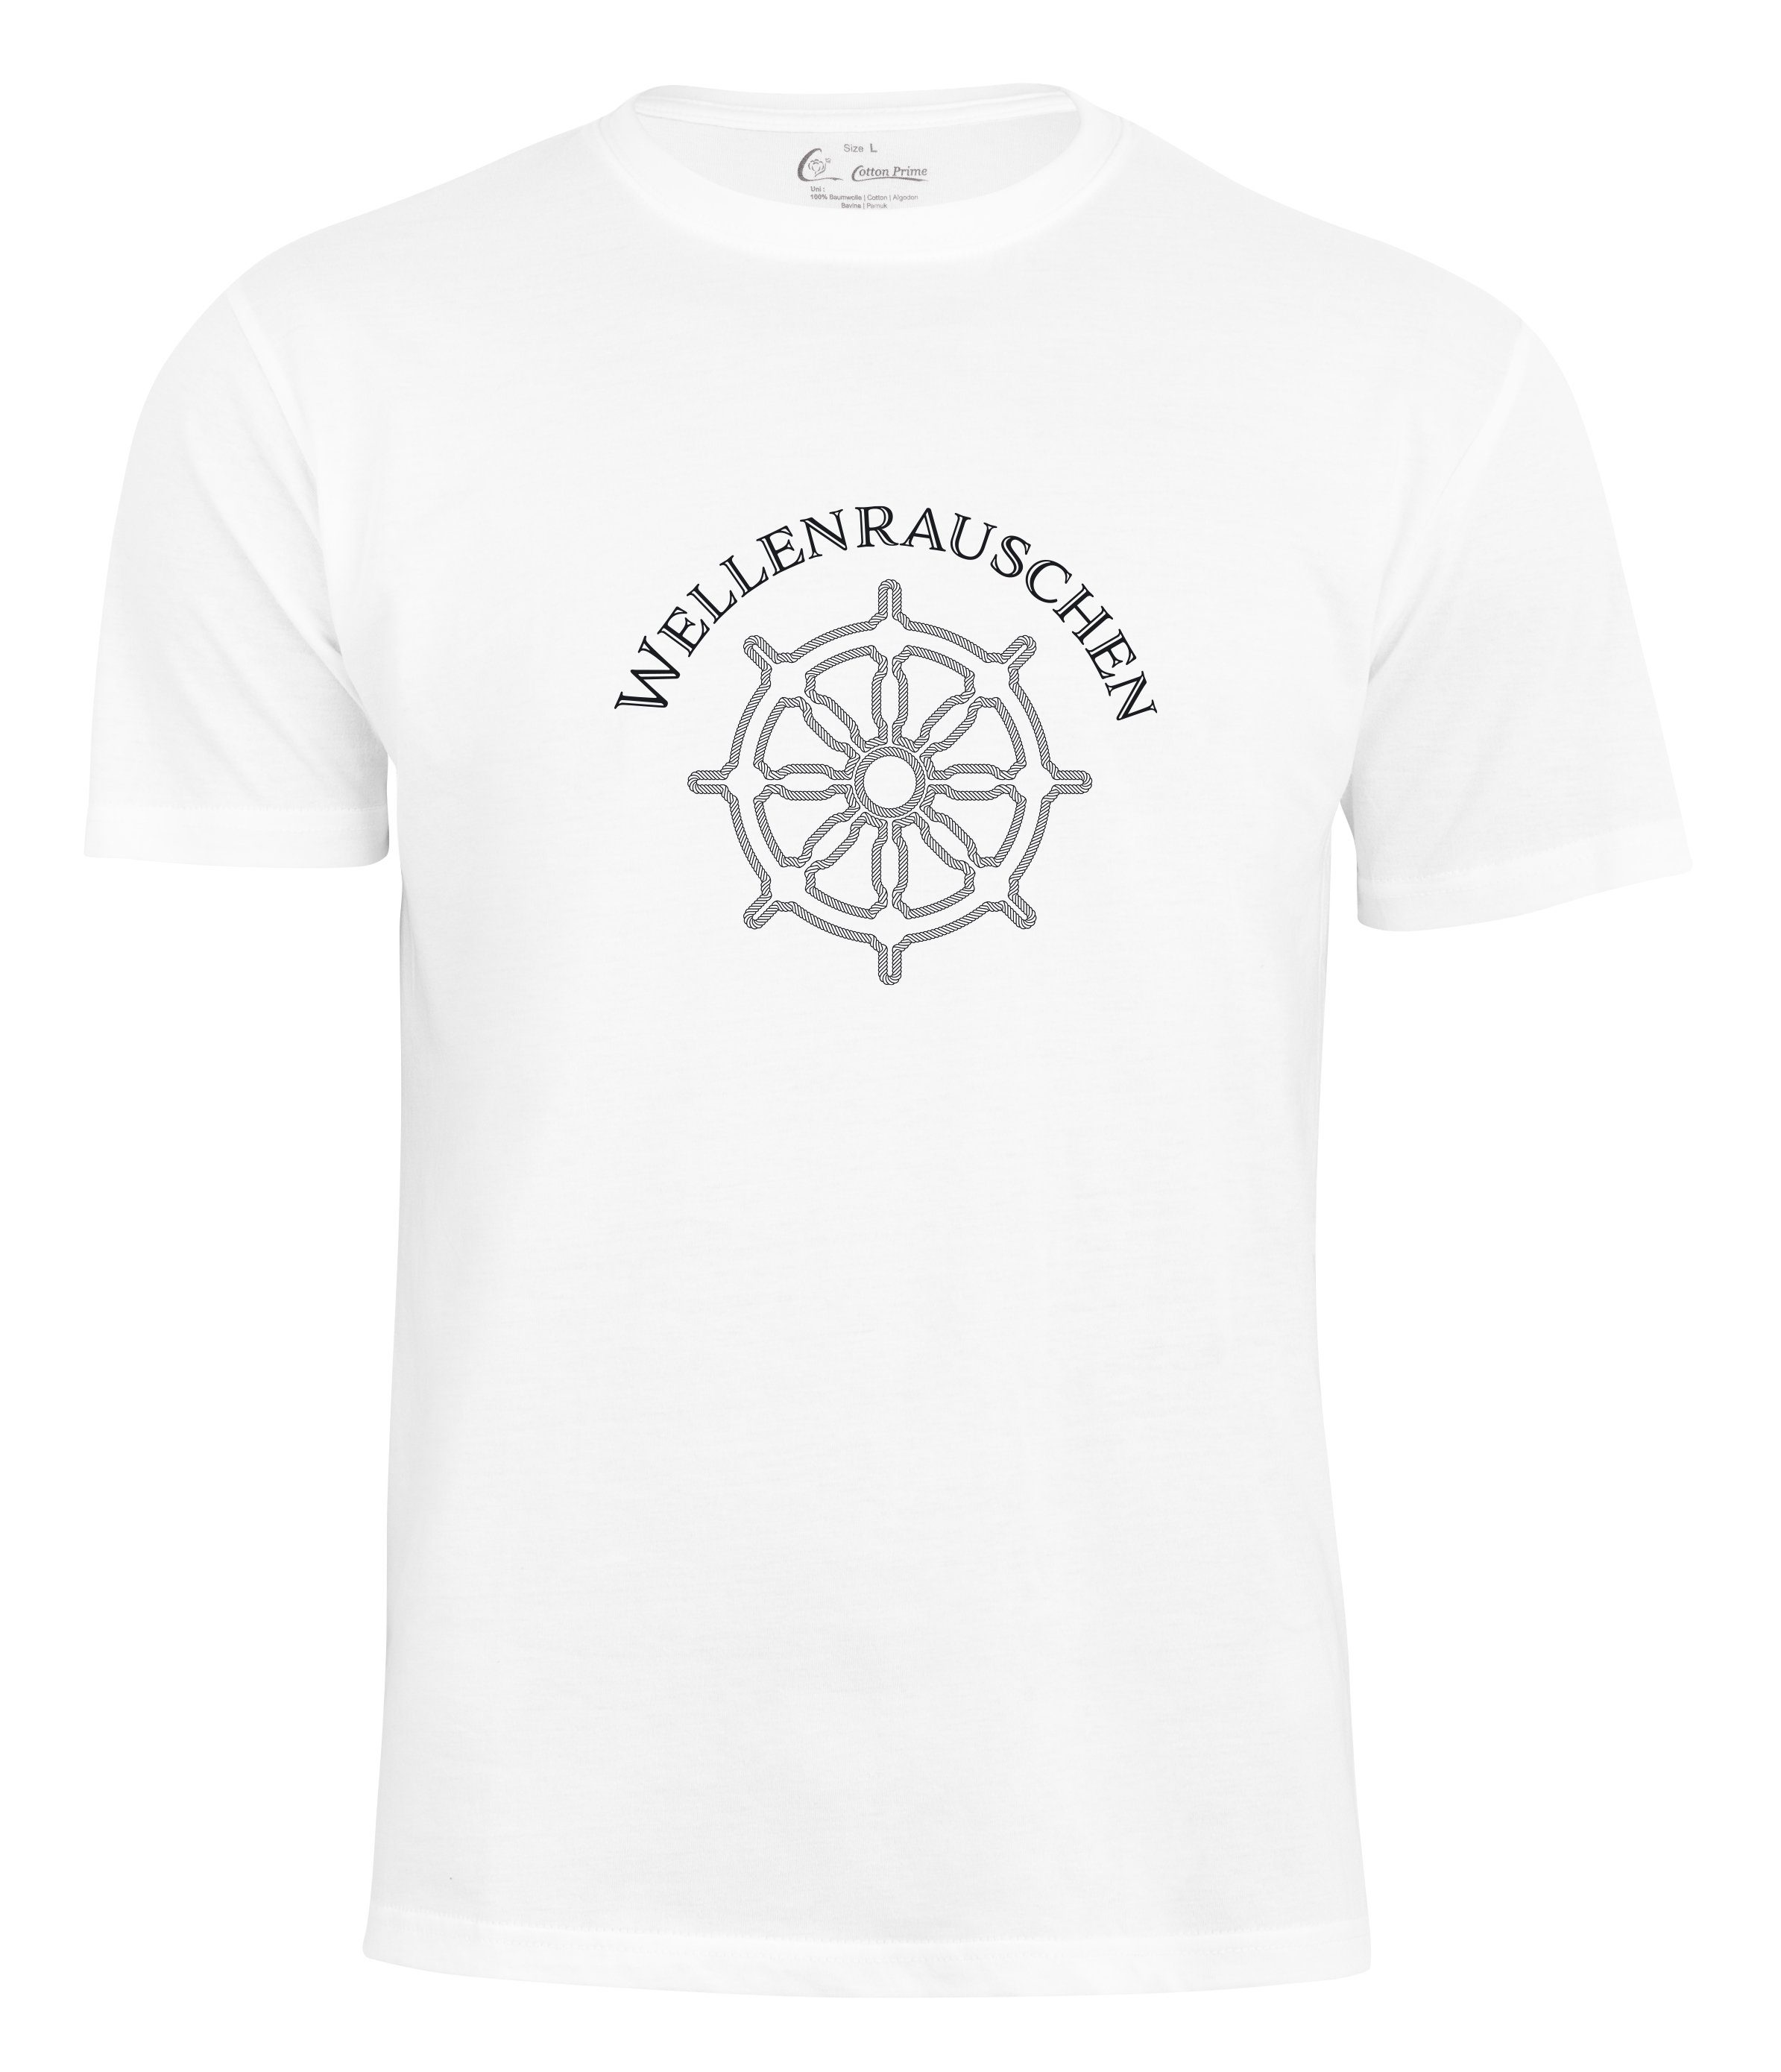 Weiss Wellenrauschen Cotton Prime® T-Shirt -